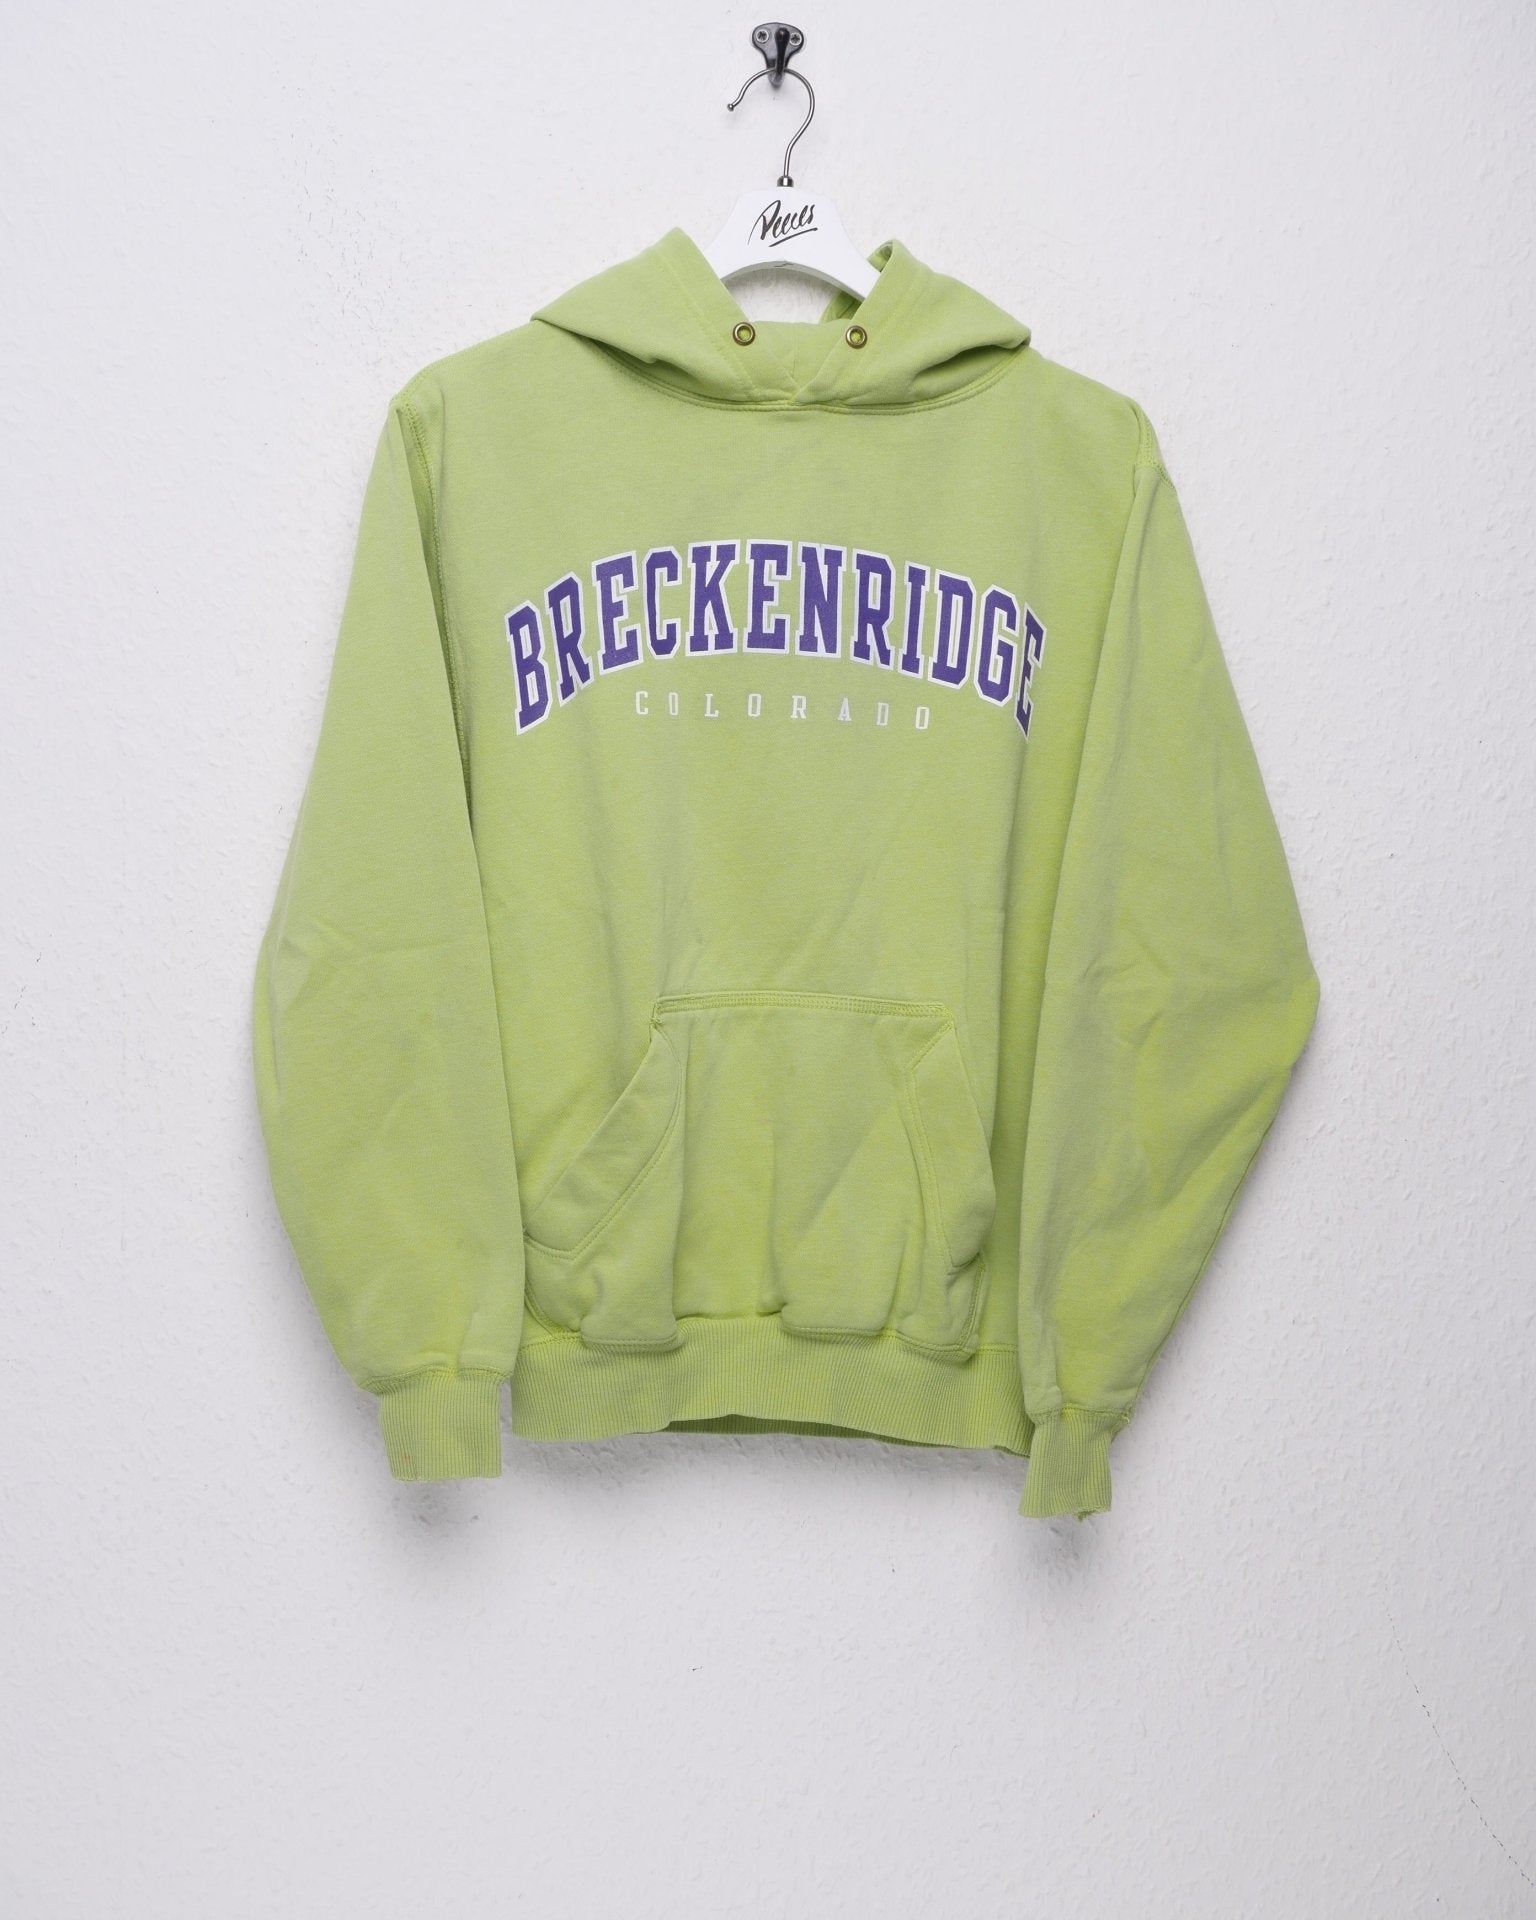 Breckenridge Colorado printed Spellout green Hoodie - Peeces